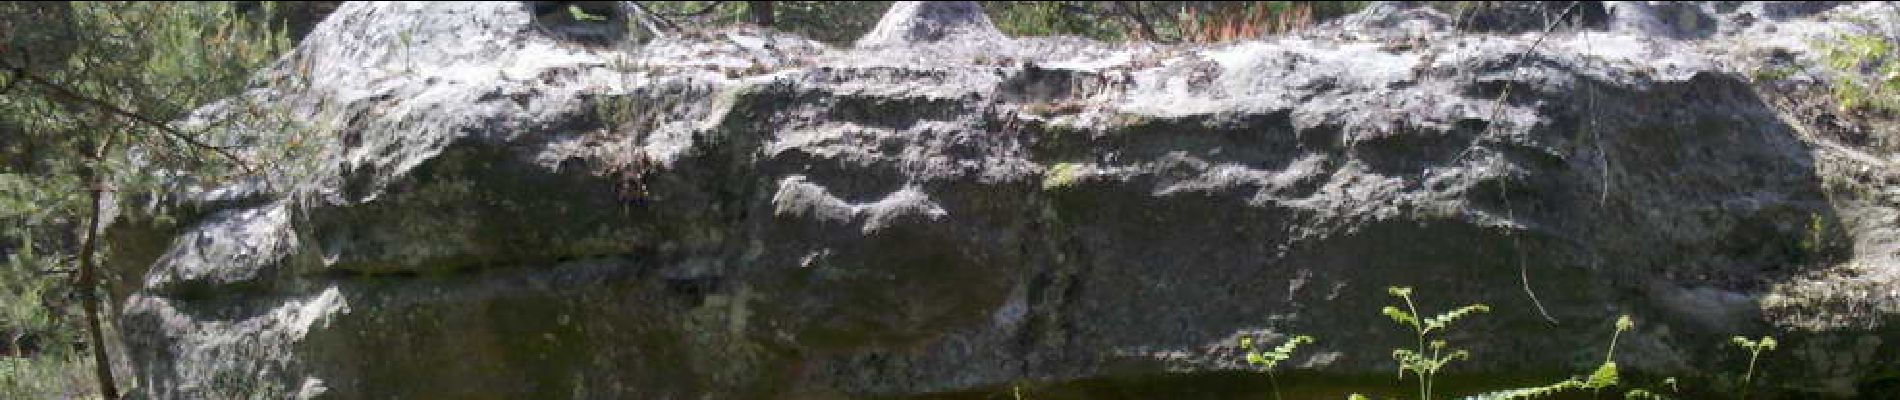 Point of interest Fontainebleau - 11 - Le museau d'un <i>Sarcosuchus imperator</i> - Photo